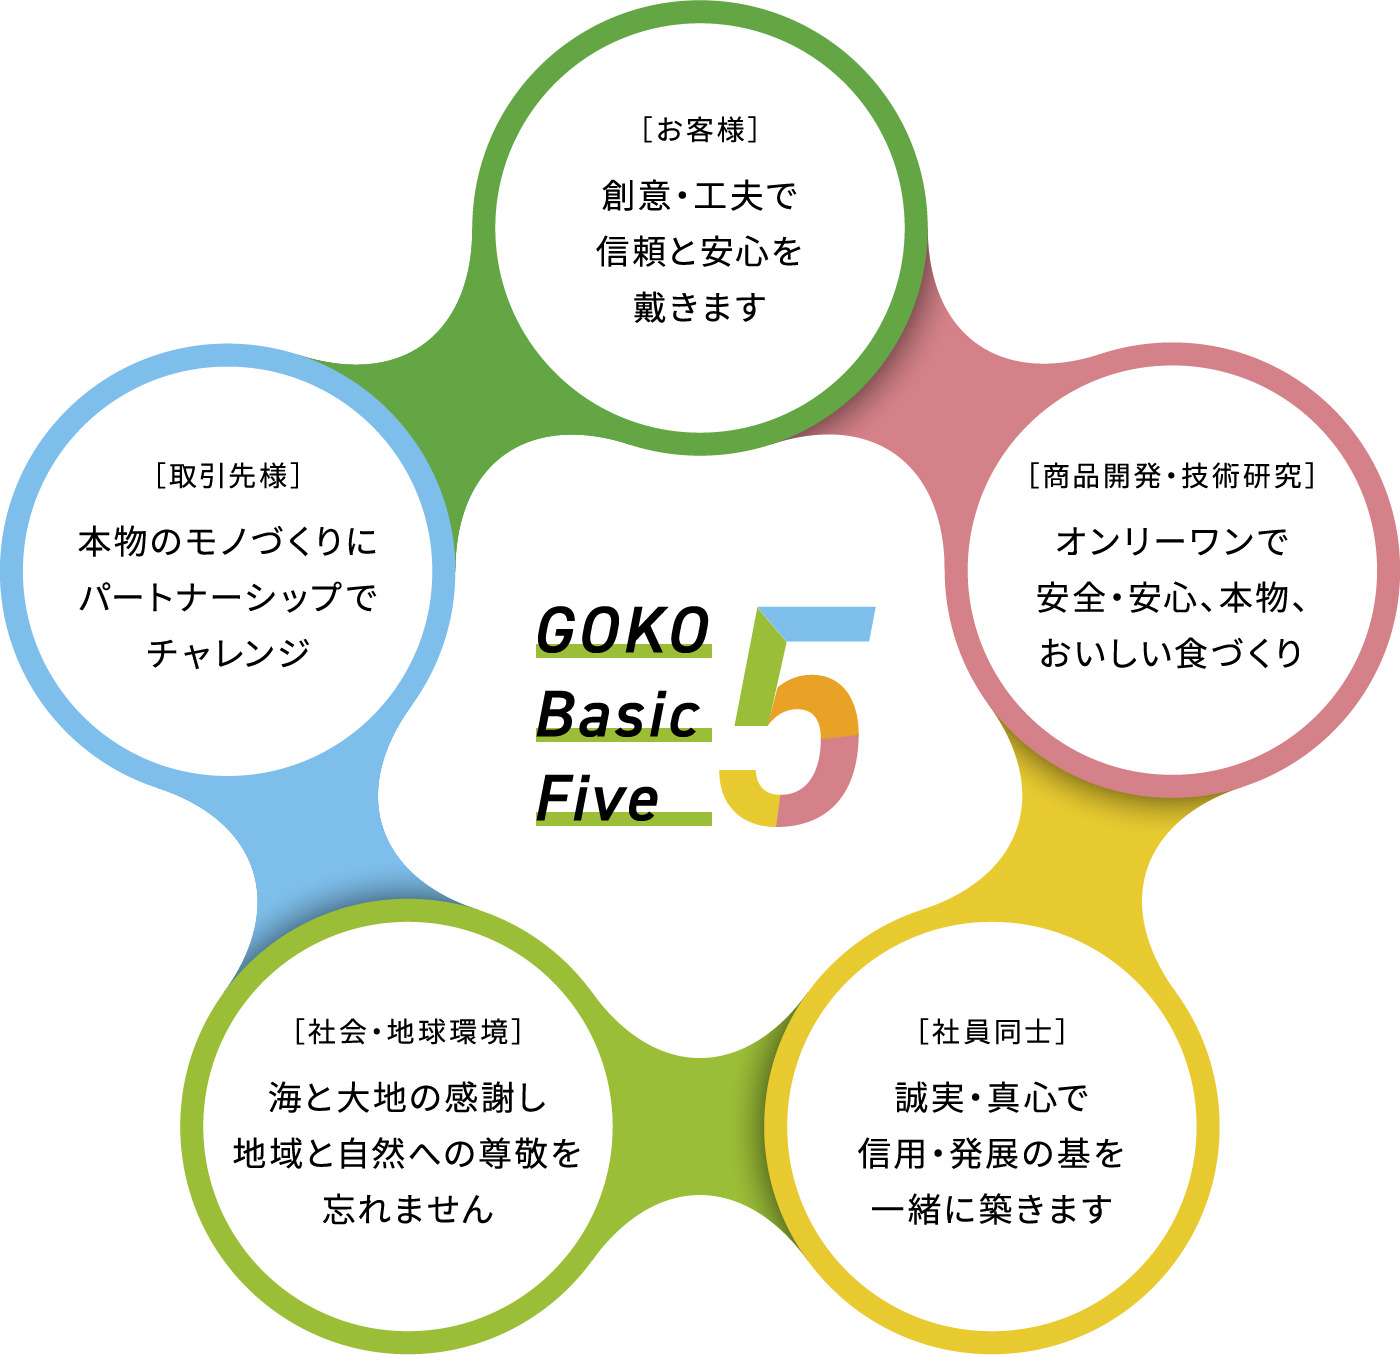 GOKO Basic Five